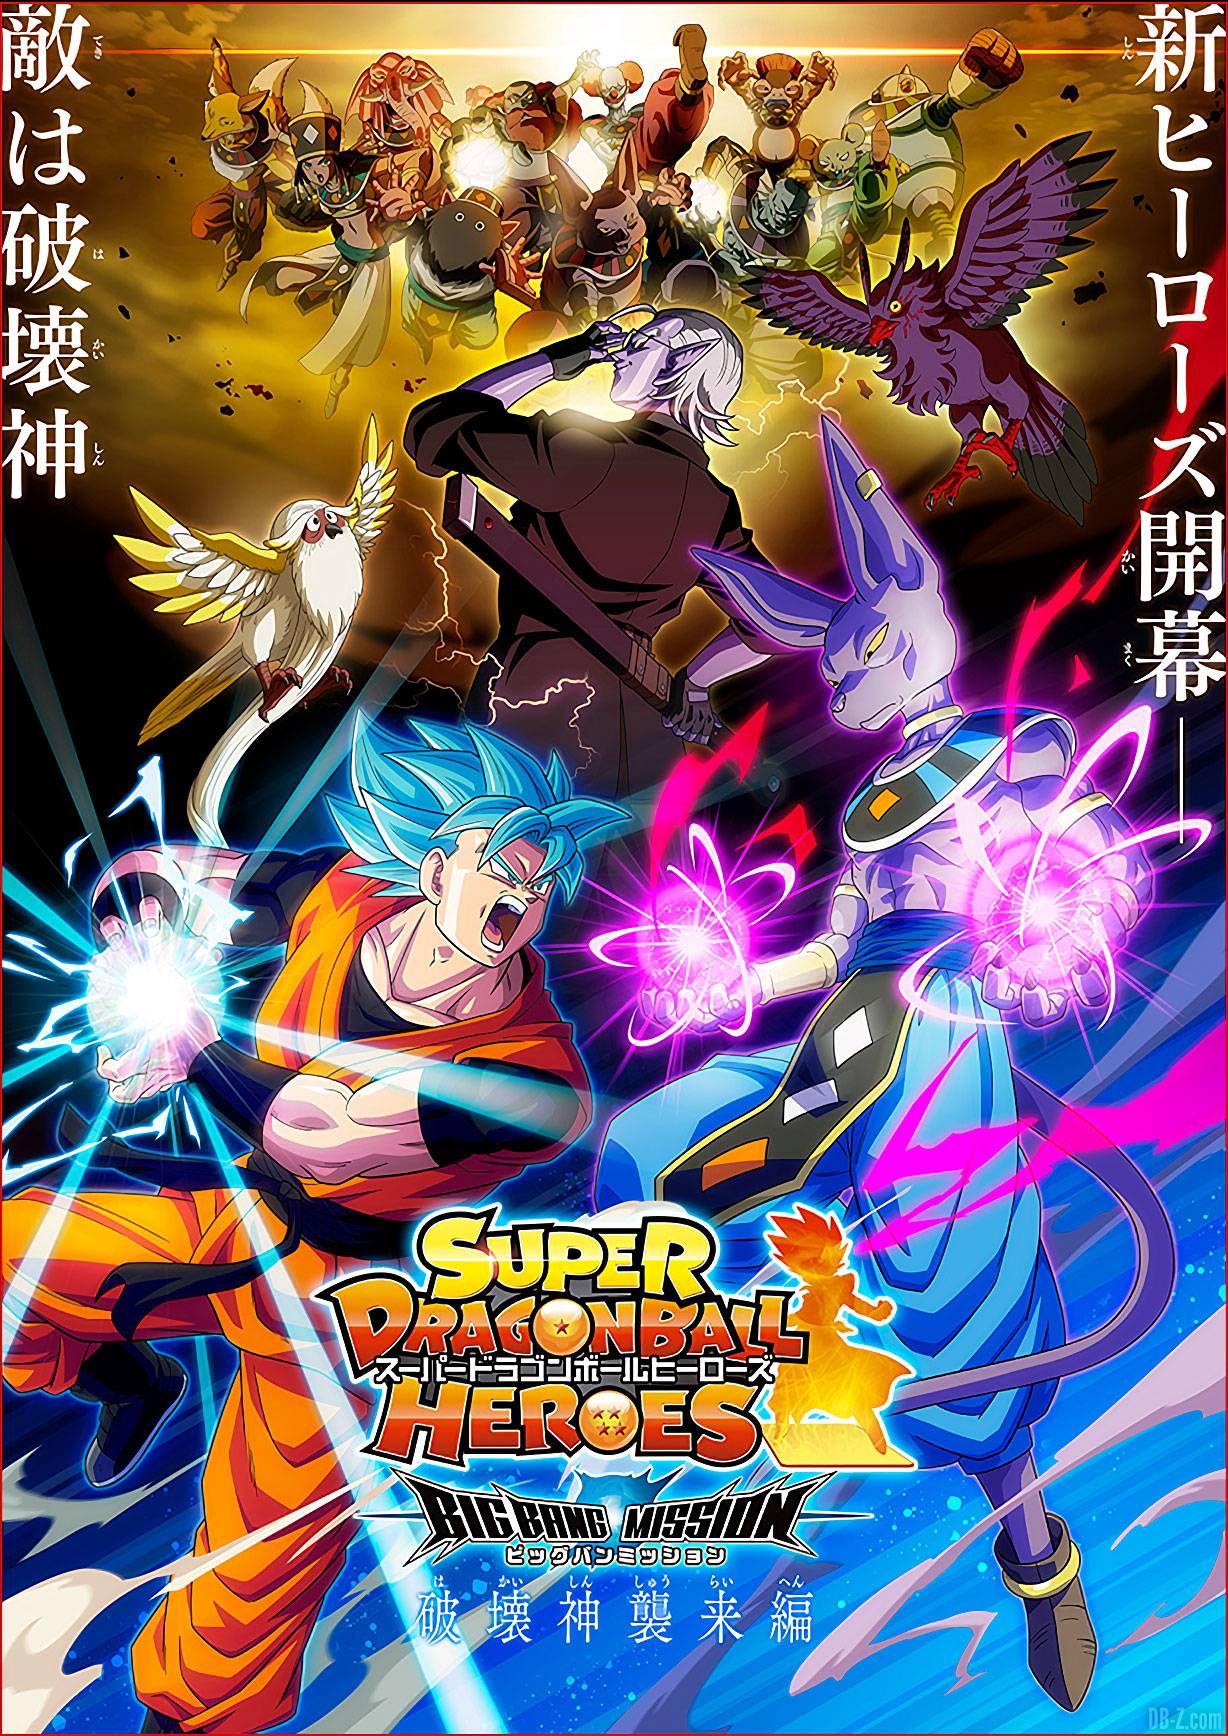 Dragon Ball Super: Super Hero Dublado - GoAnimes